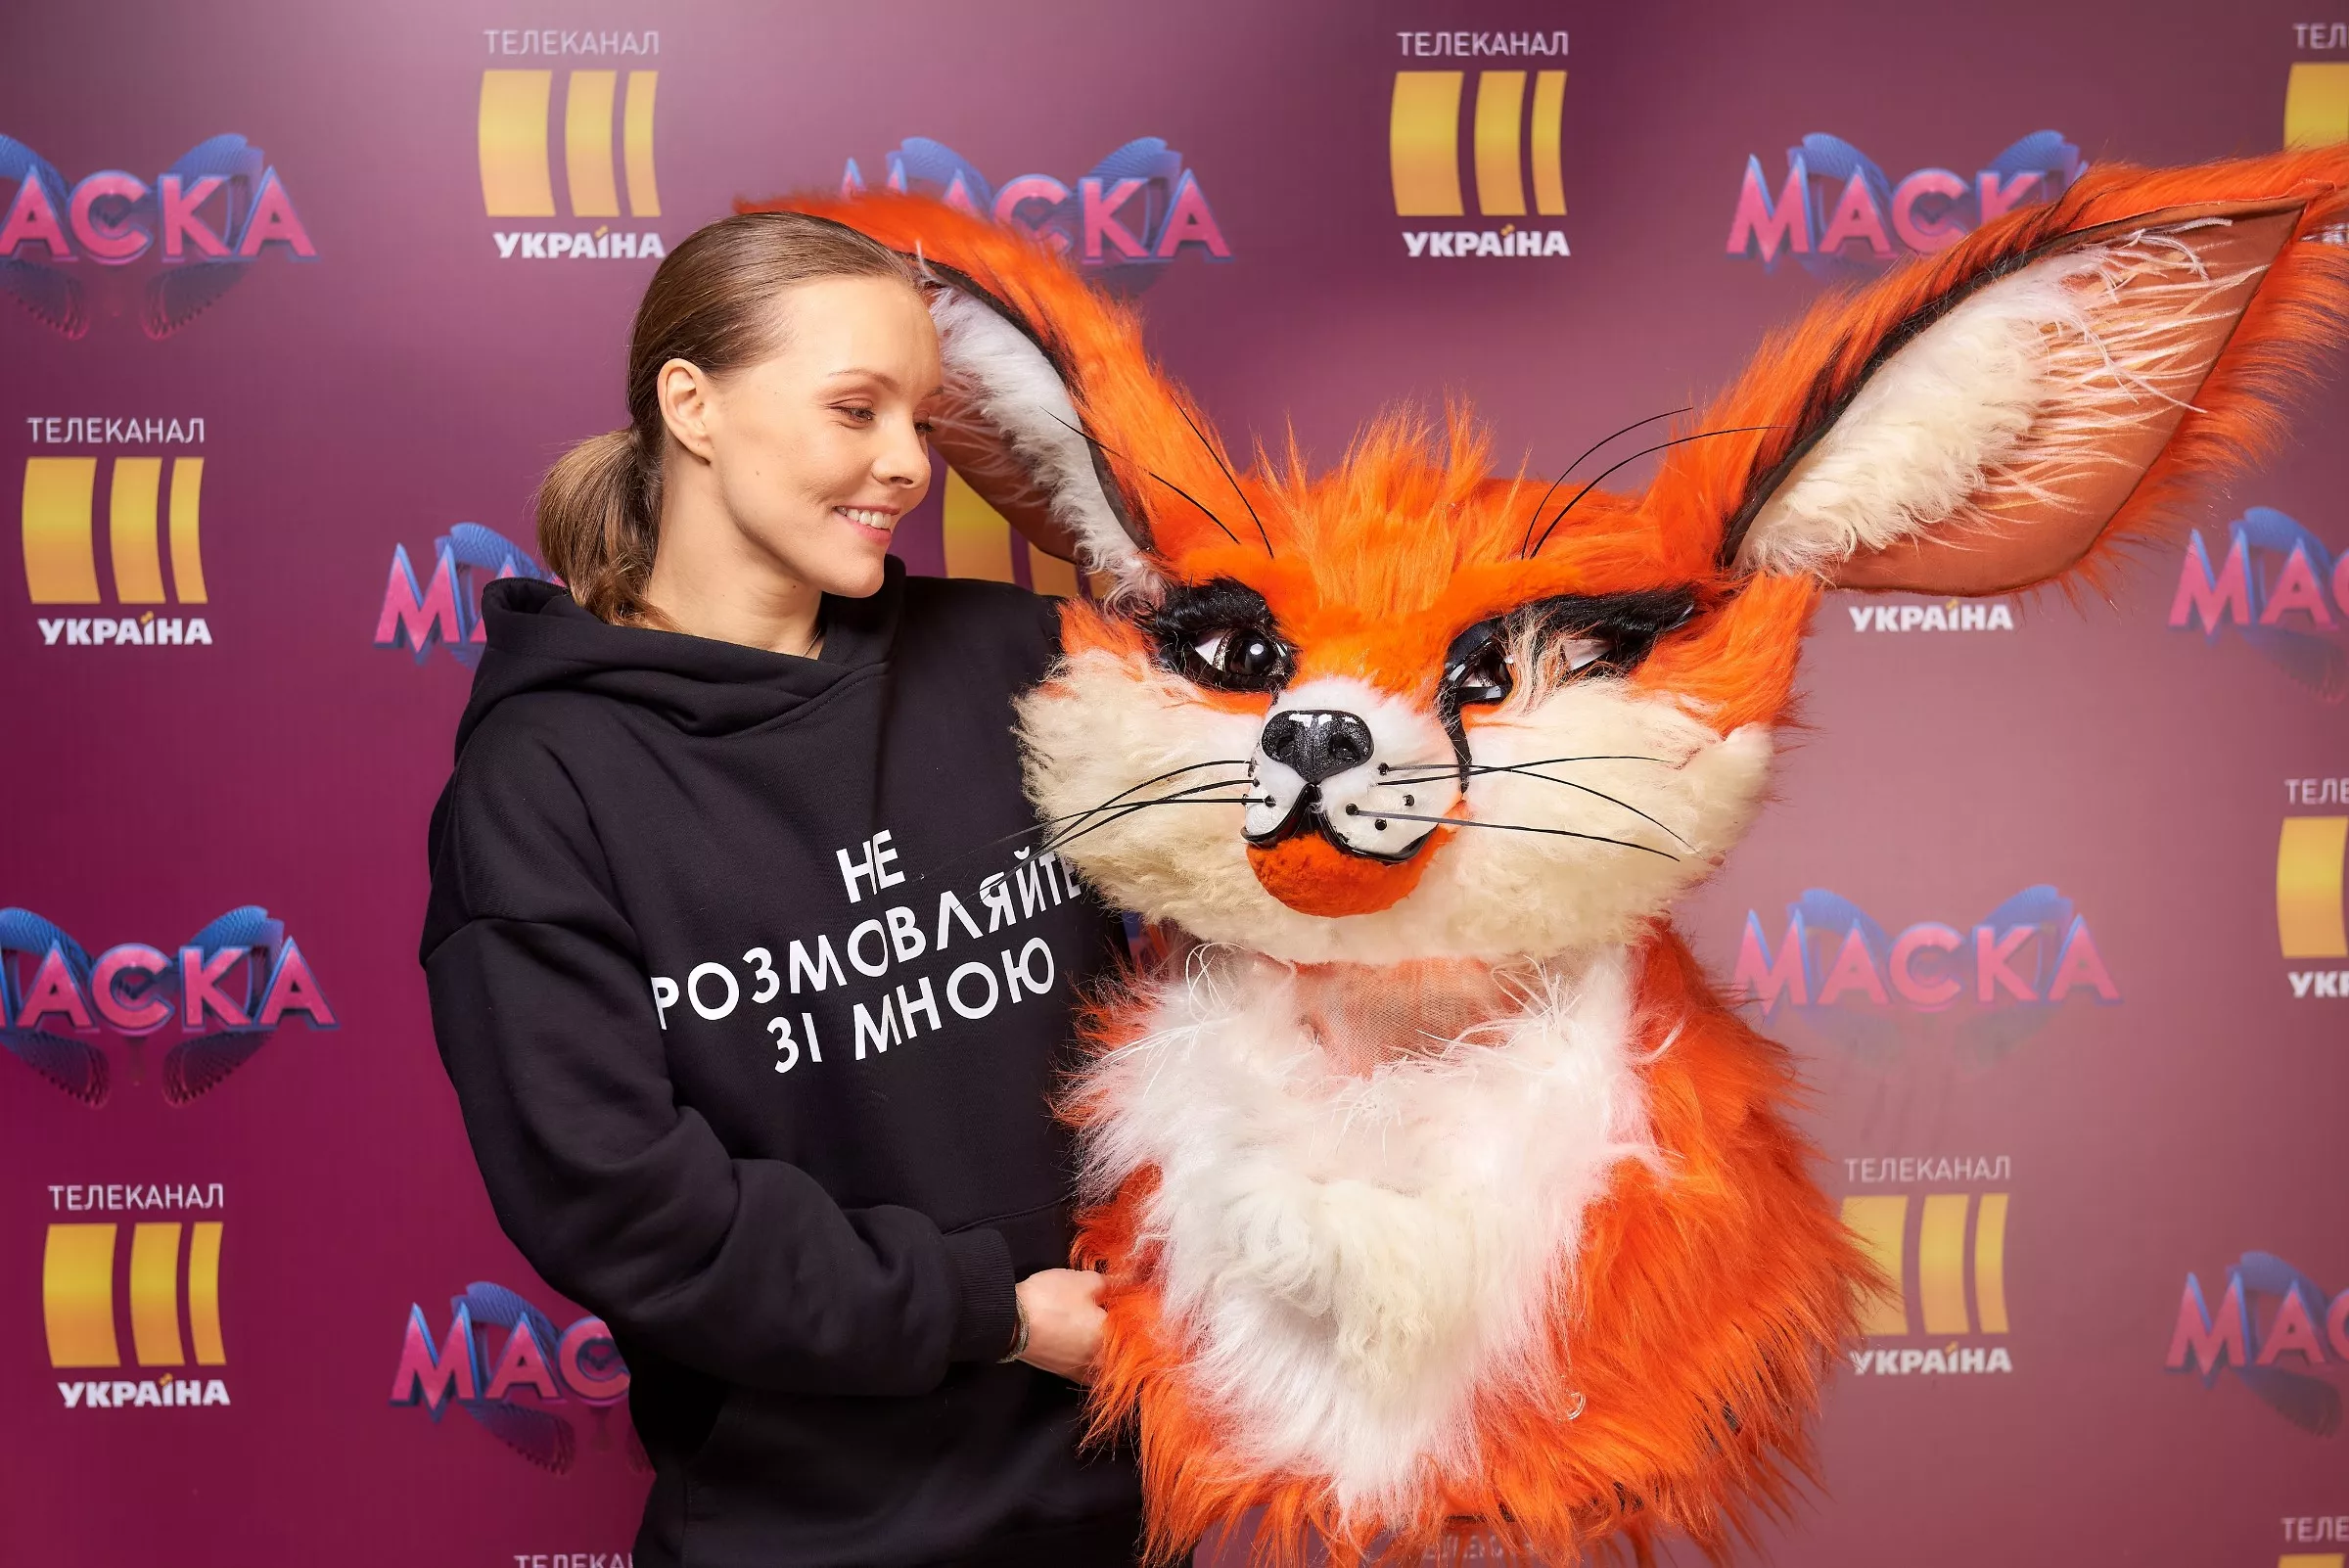 Алена Шоптенко участвовала в шоу "Маска".